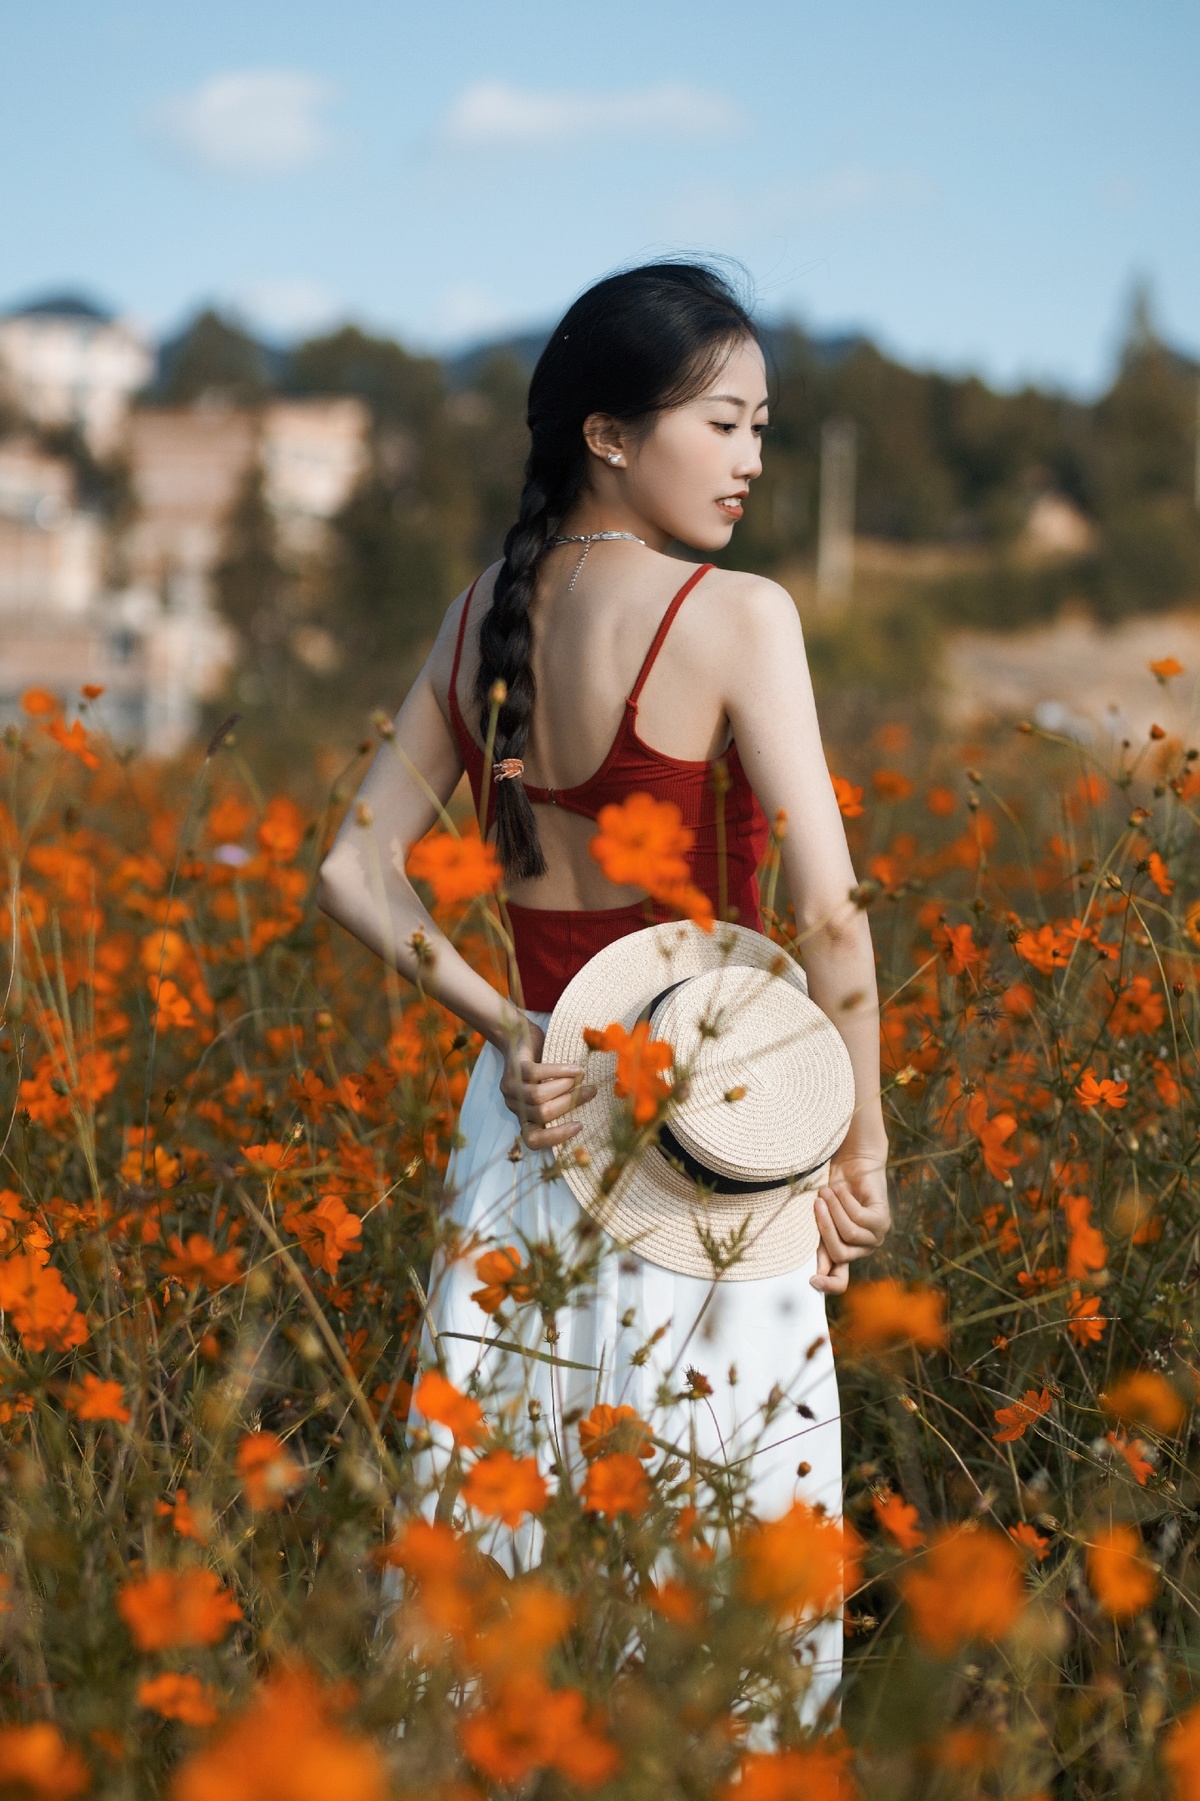 一位穿着白色连衣裙和红色帽子的年轻女子穿过一个橙色田野